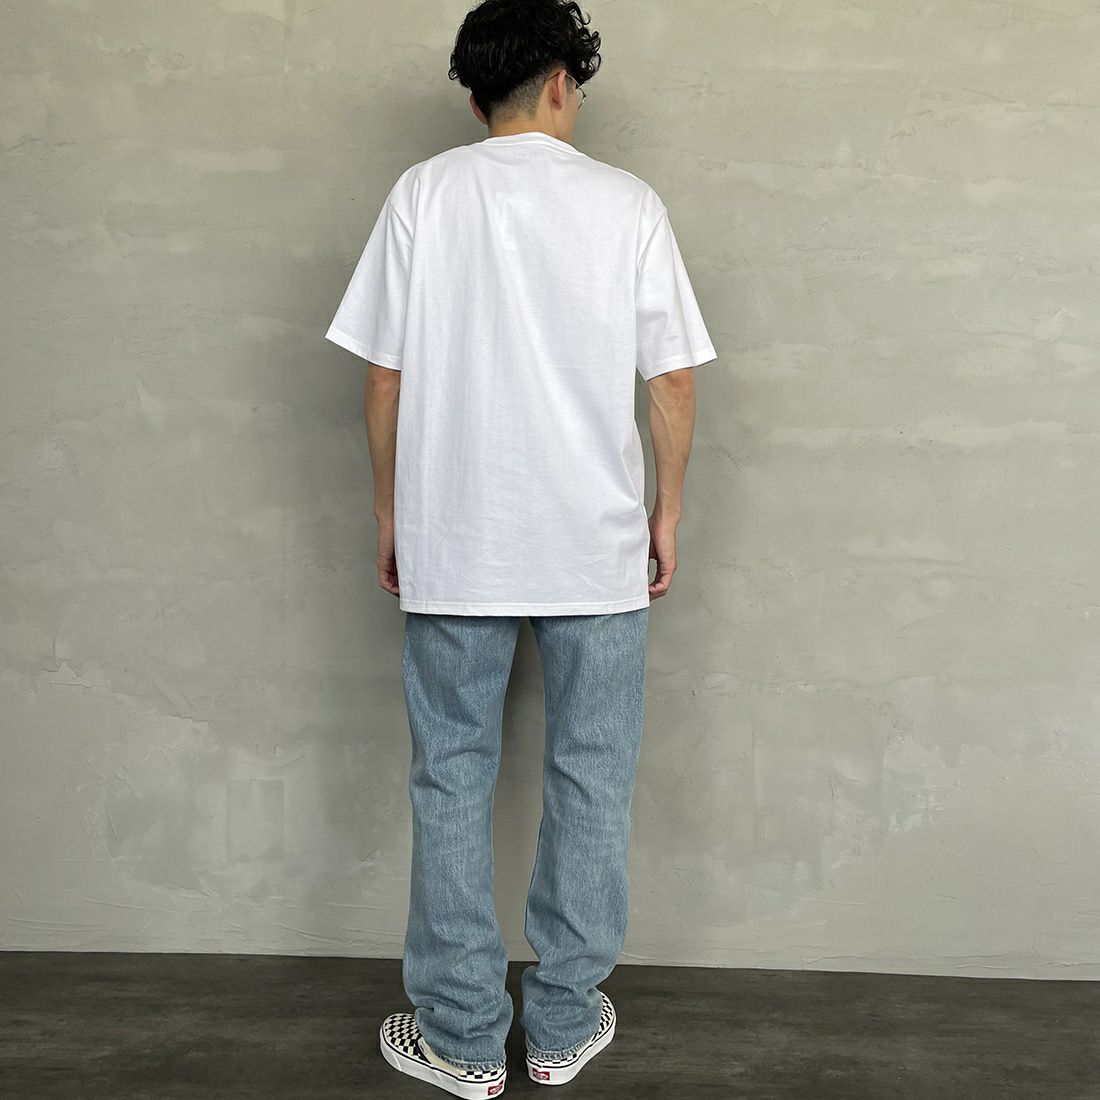 carhartt WIP [カーハートダブリューアイピー] UNIVERSITY ロゴプリントTシャツ [I028990] WHITE/BLAC&&モデル身長：168cm 着用サイズ：L&&